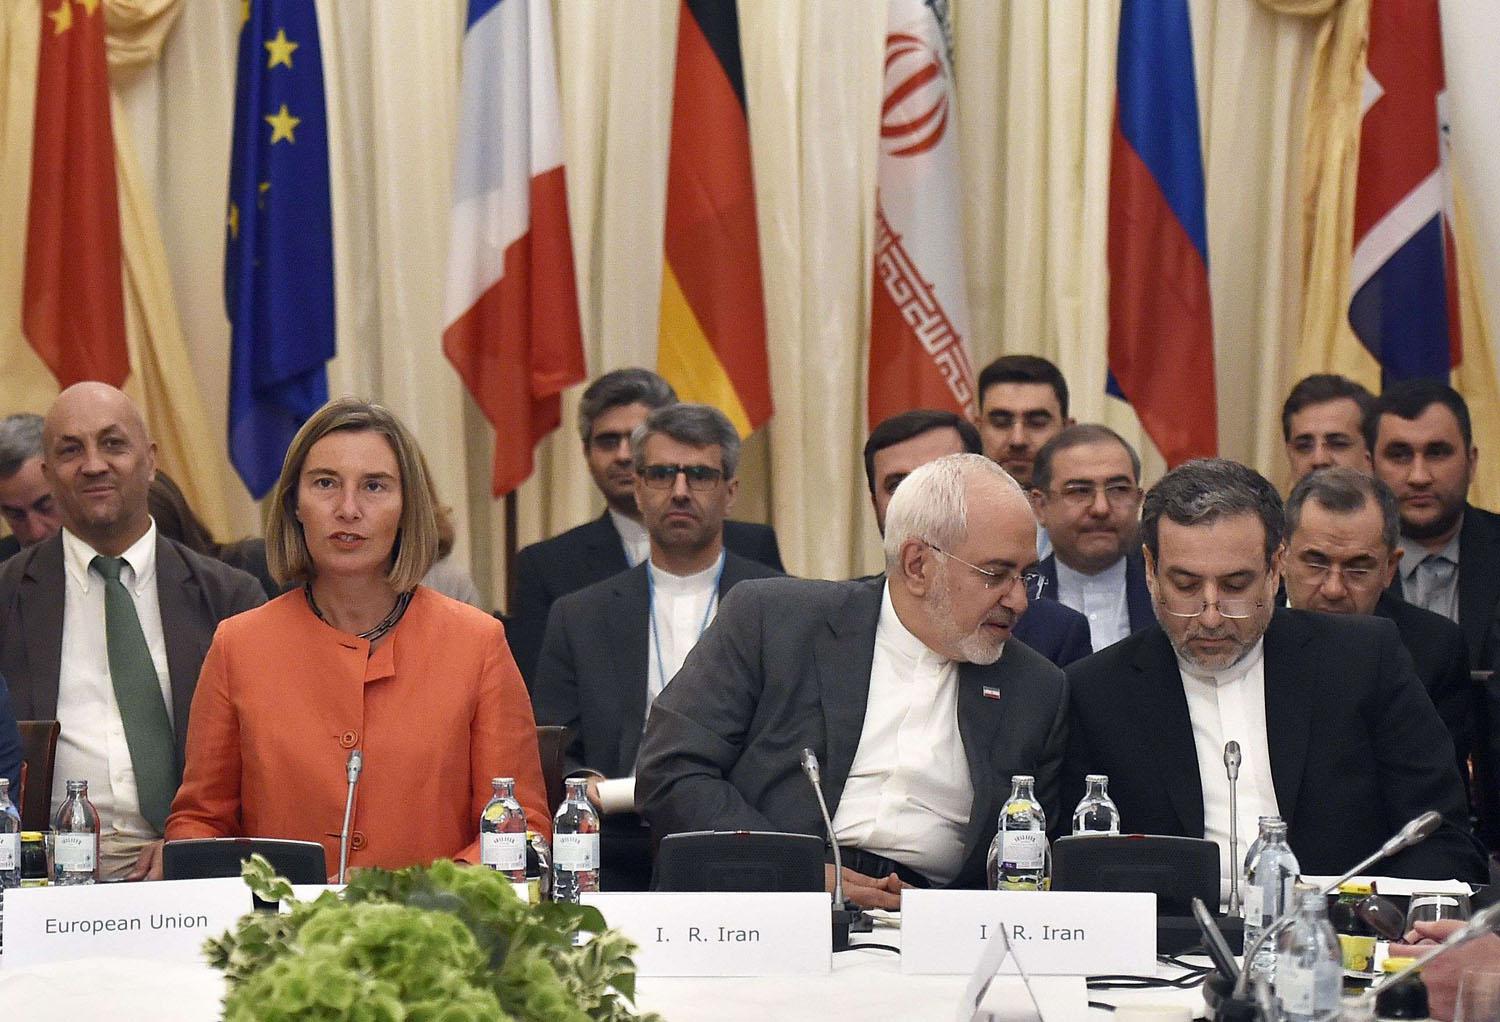 وزير الخارجية الإيراني محمد جواد ظريف يتحدث إلى نائبه عباس عراقجي بحضور مسؤولة الشؤون الخارجية في الاتحاد الأوروبي فردريكا موغيريني